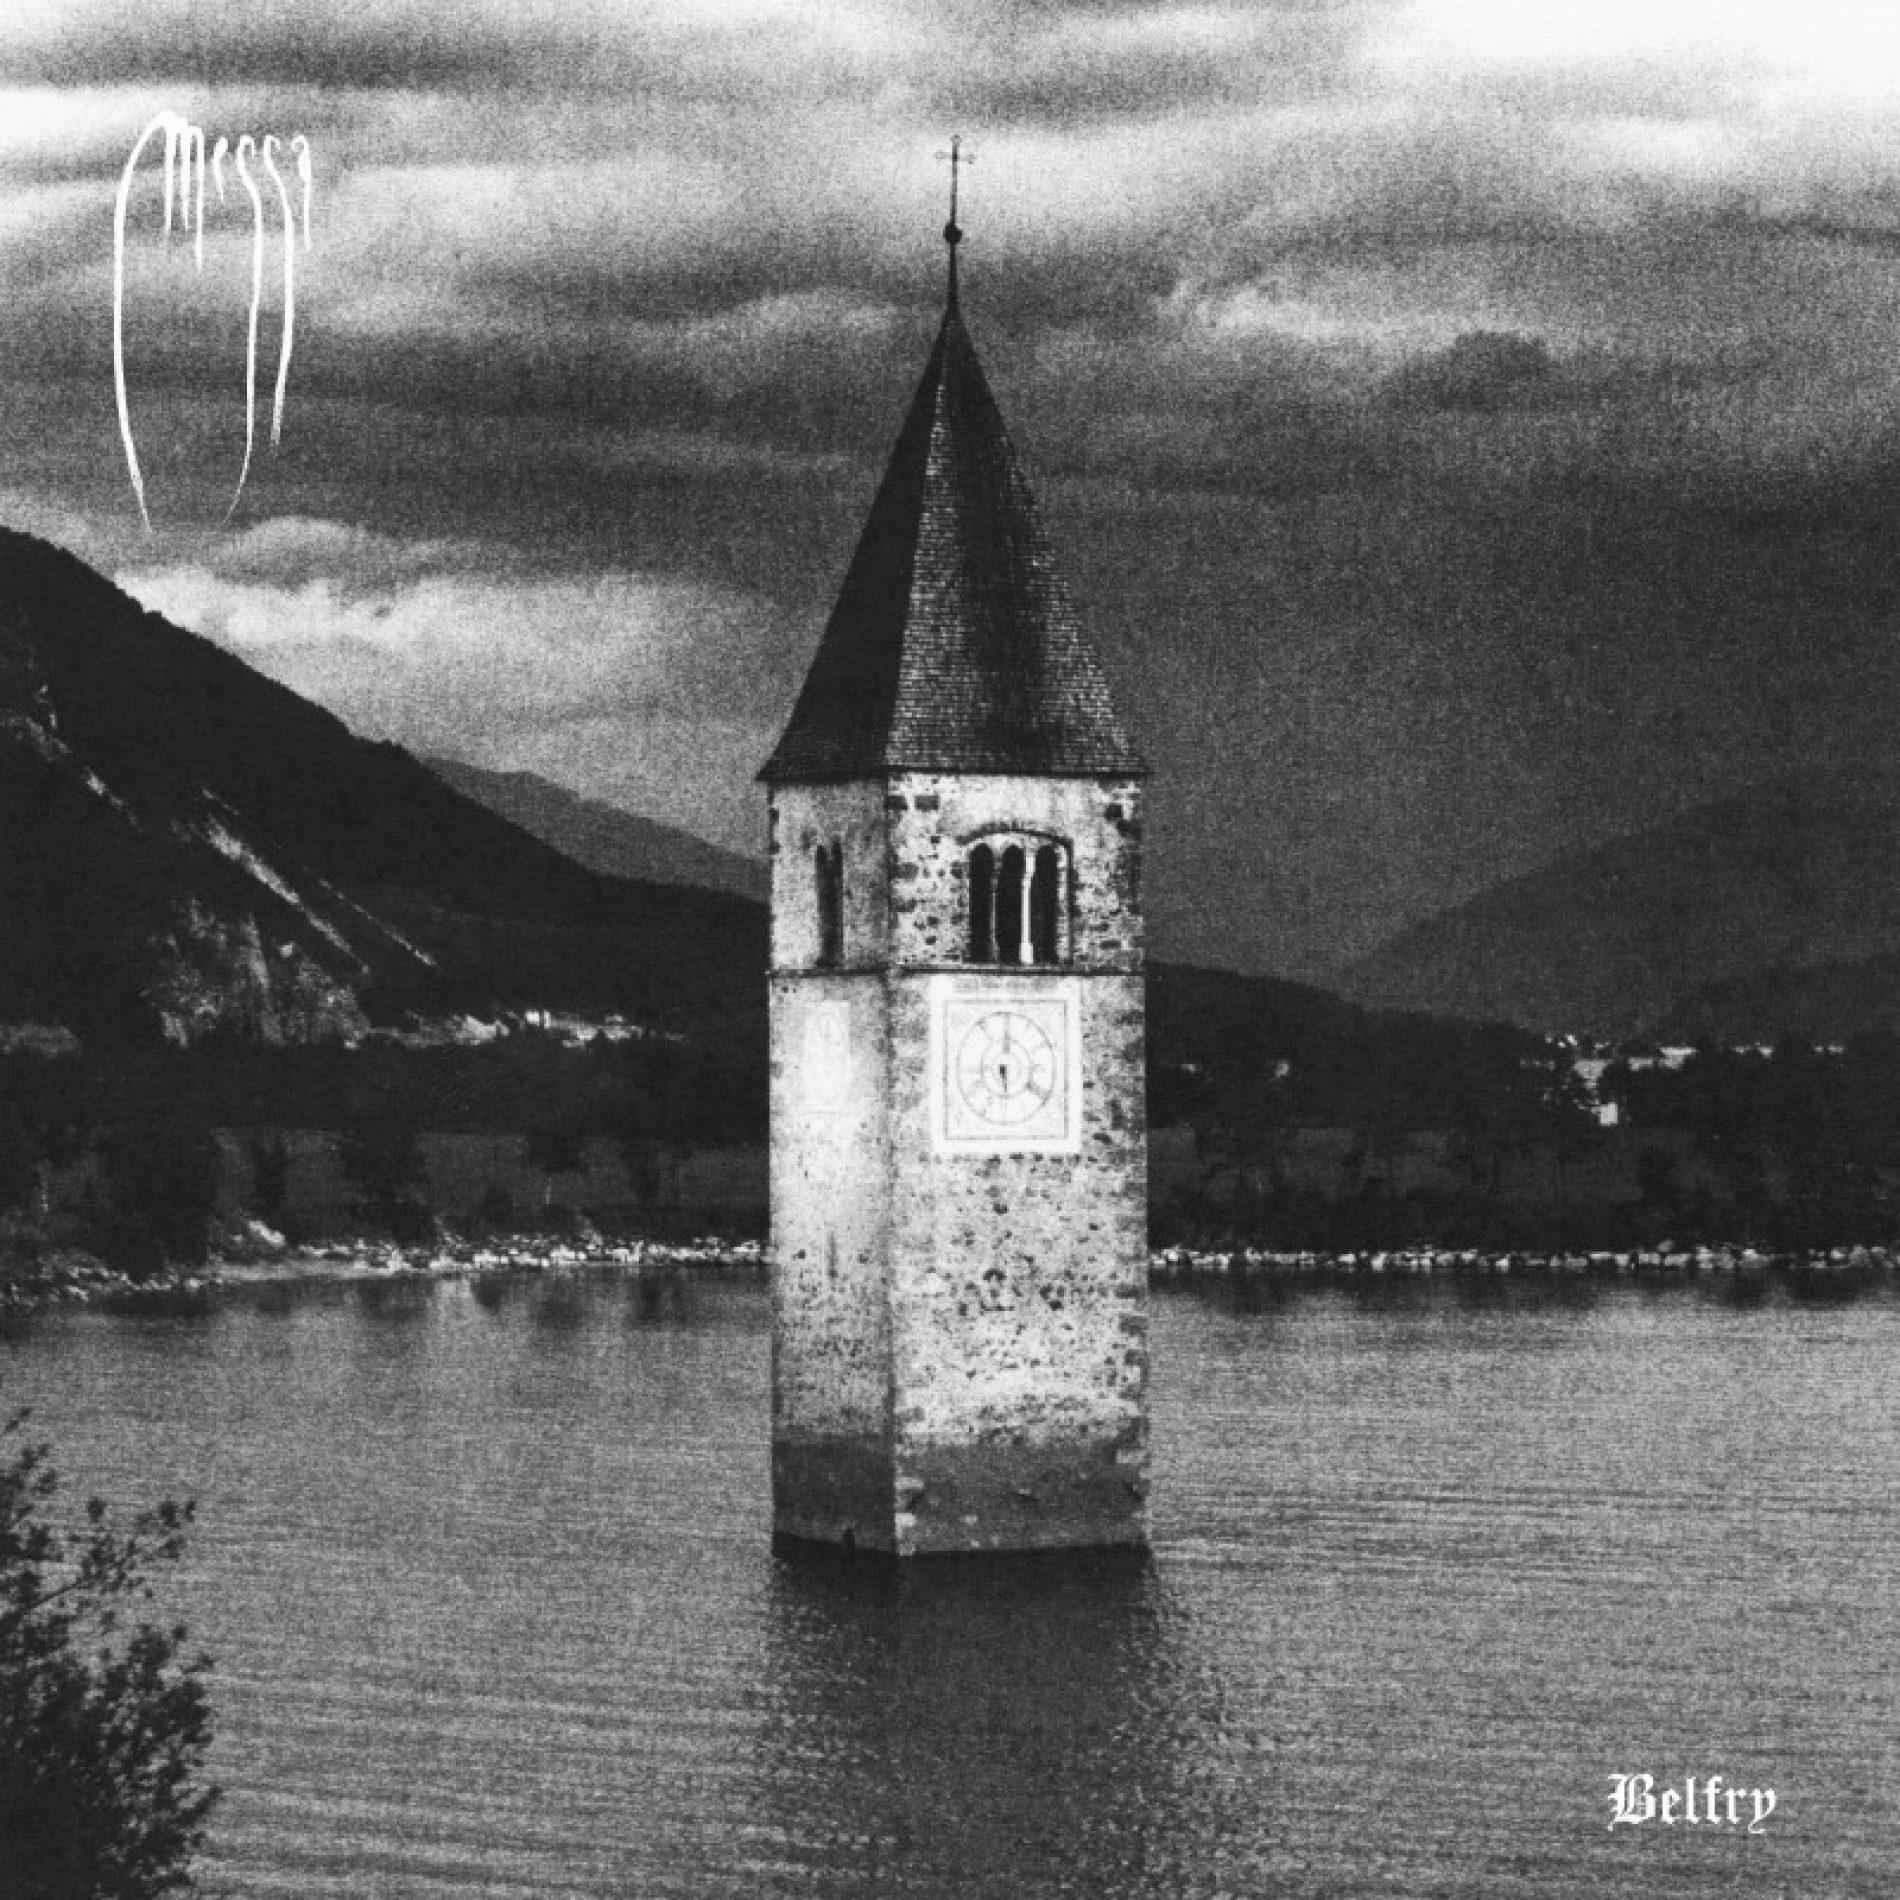 Cronica de album: Messa – Belfry